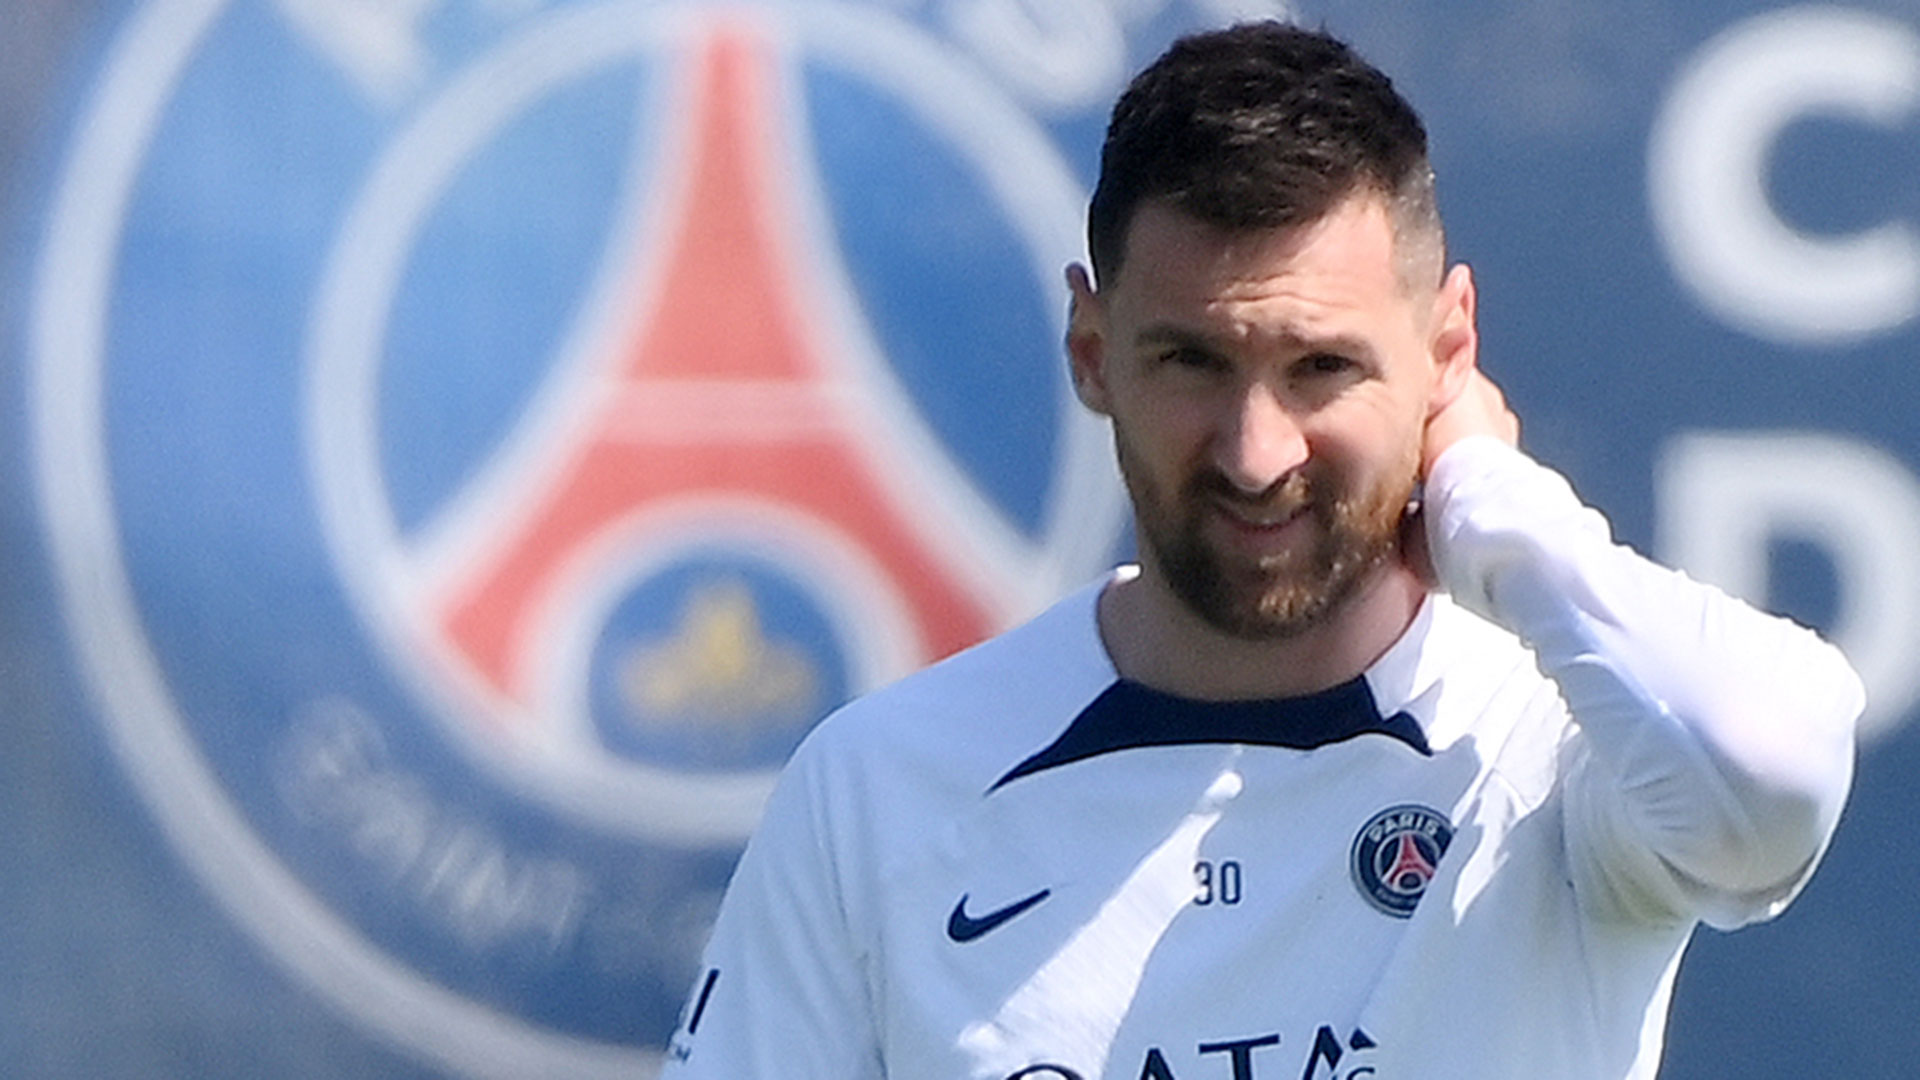 Rendidos a sus pies: Lionel Messi fue elegido como el mejor futbolista de la Ligue 1 por un diario de Francia